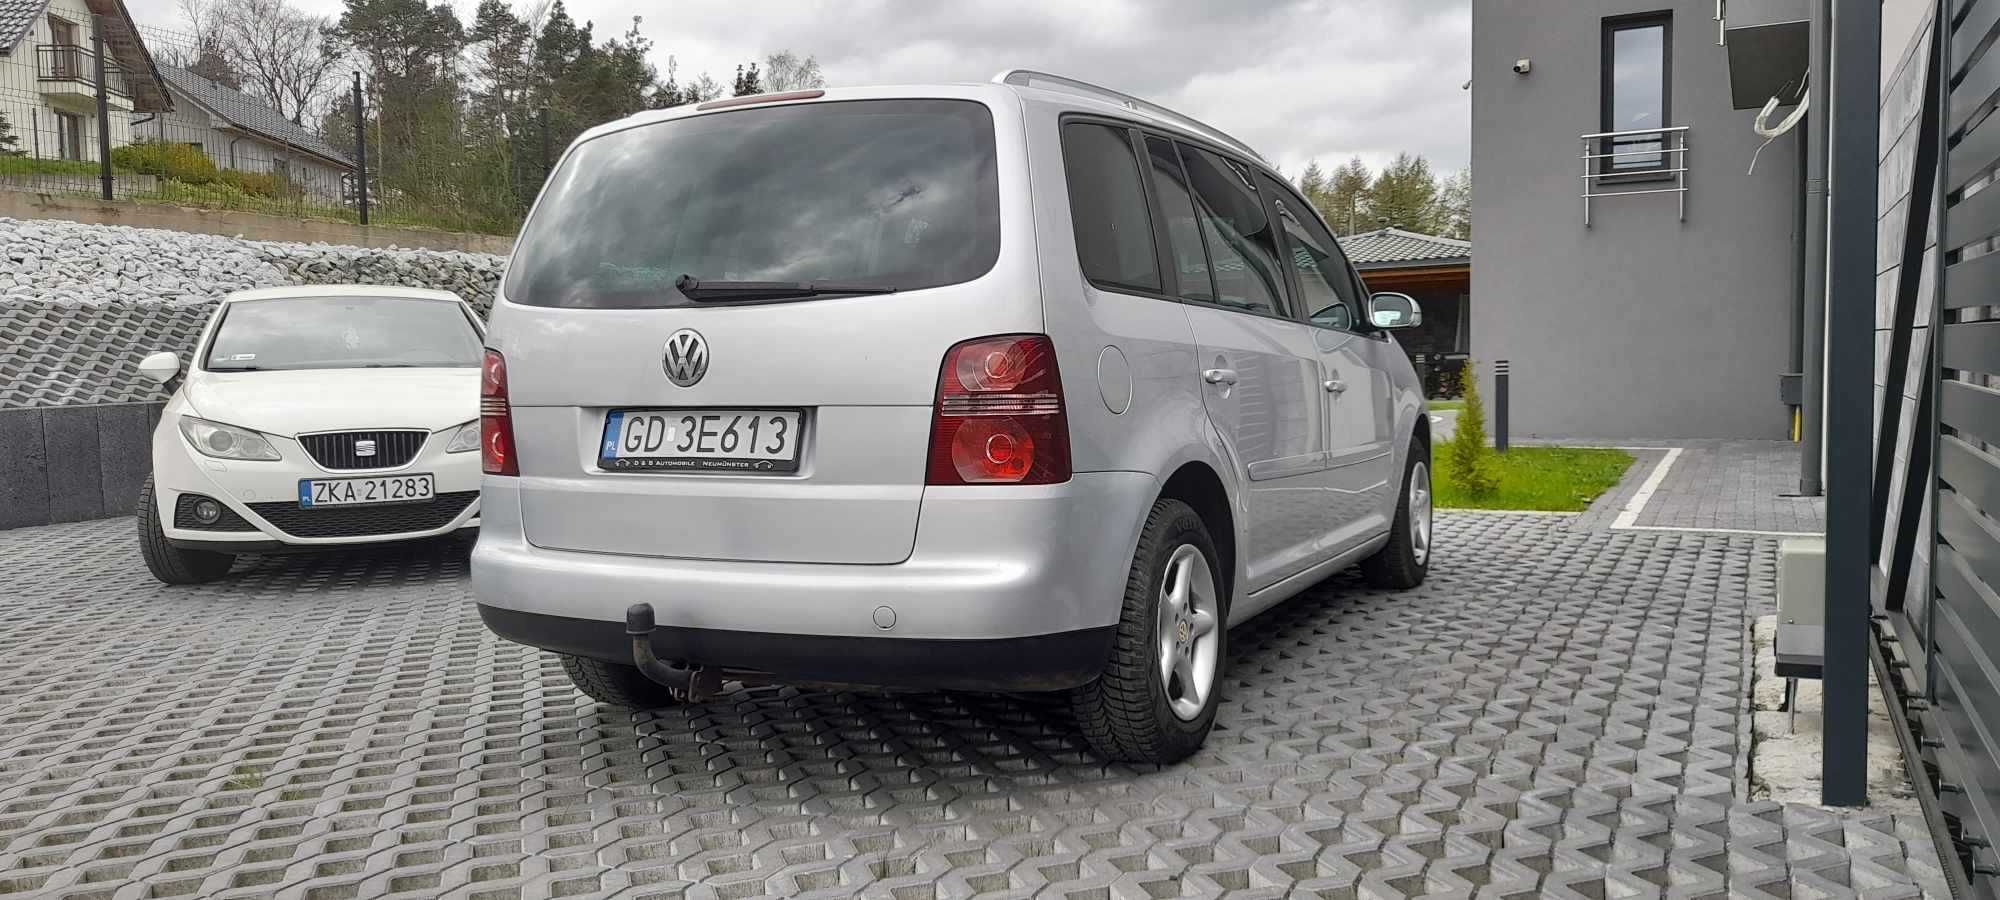 VW Touran Śliczny stan 2 lata w kraju Climatronic